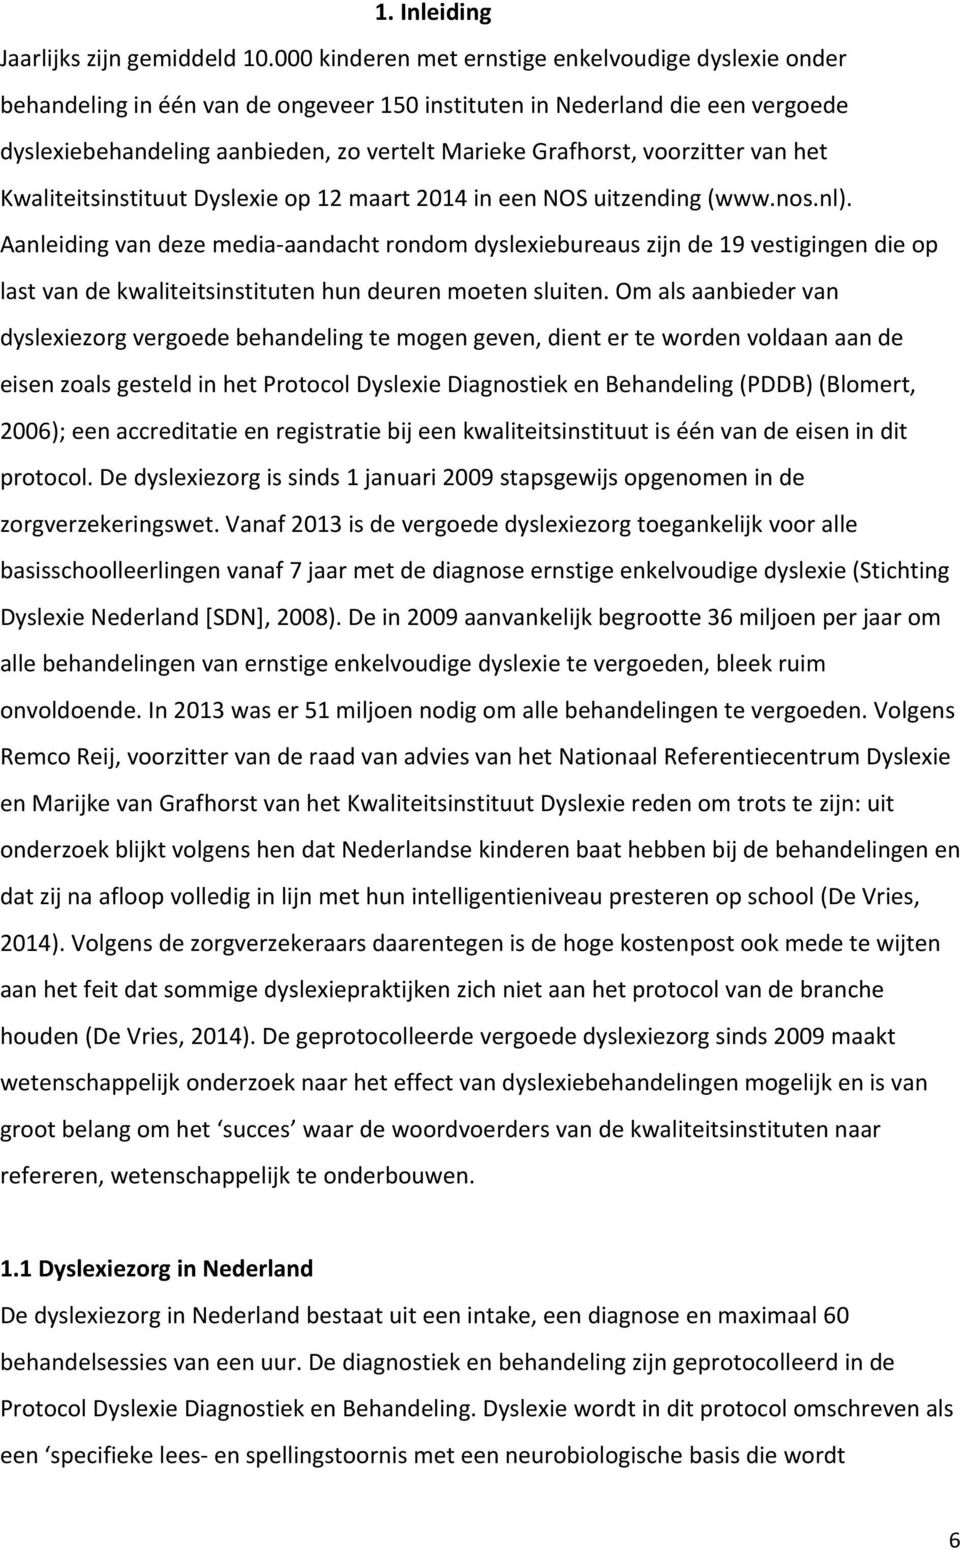 voorzitter van het Kwaliteitsinstituut Dyslexie op 12 maart 2014 in een NOS uitzending (www.nos.nl).